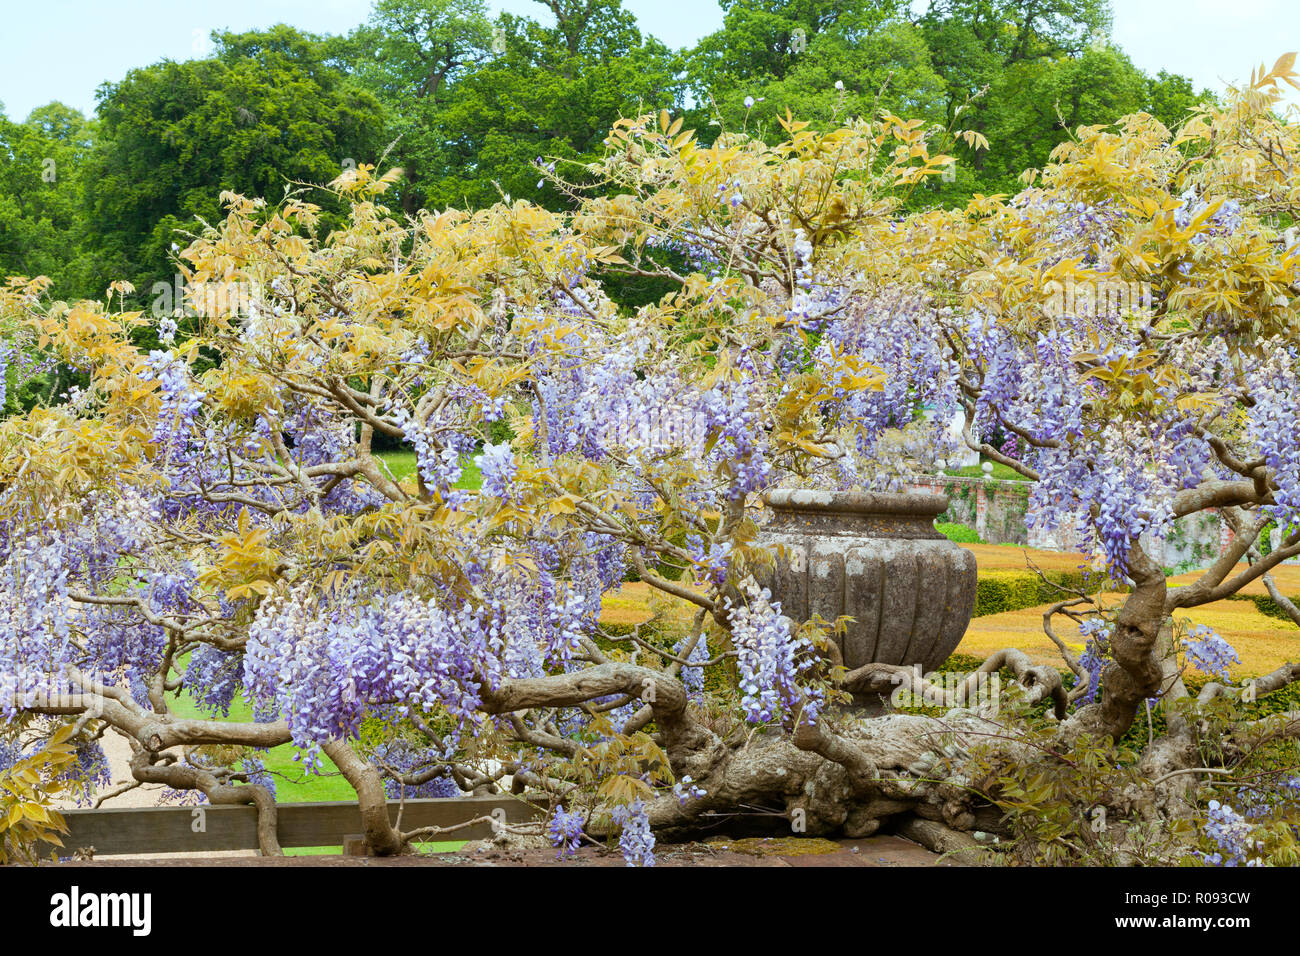 Lila duftenden Glyzinien Blumen hängen von den Niederlassungen rund um Dekorative Stein Topf, im Englischen Garten. Stockfoto